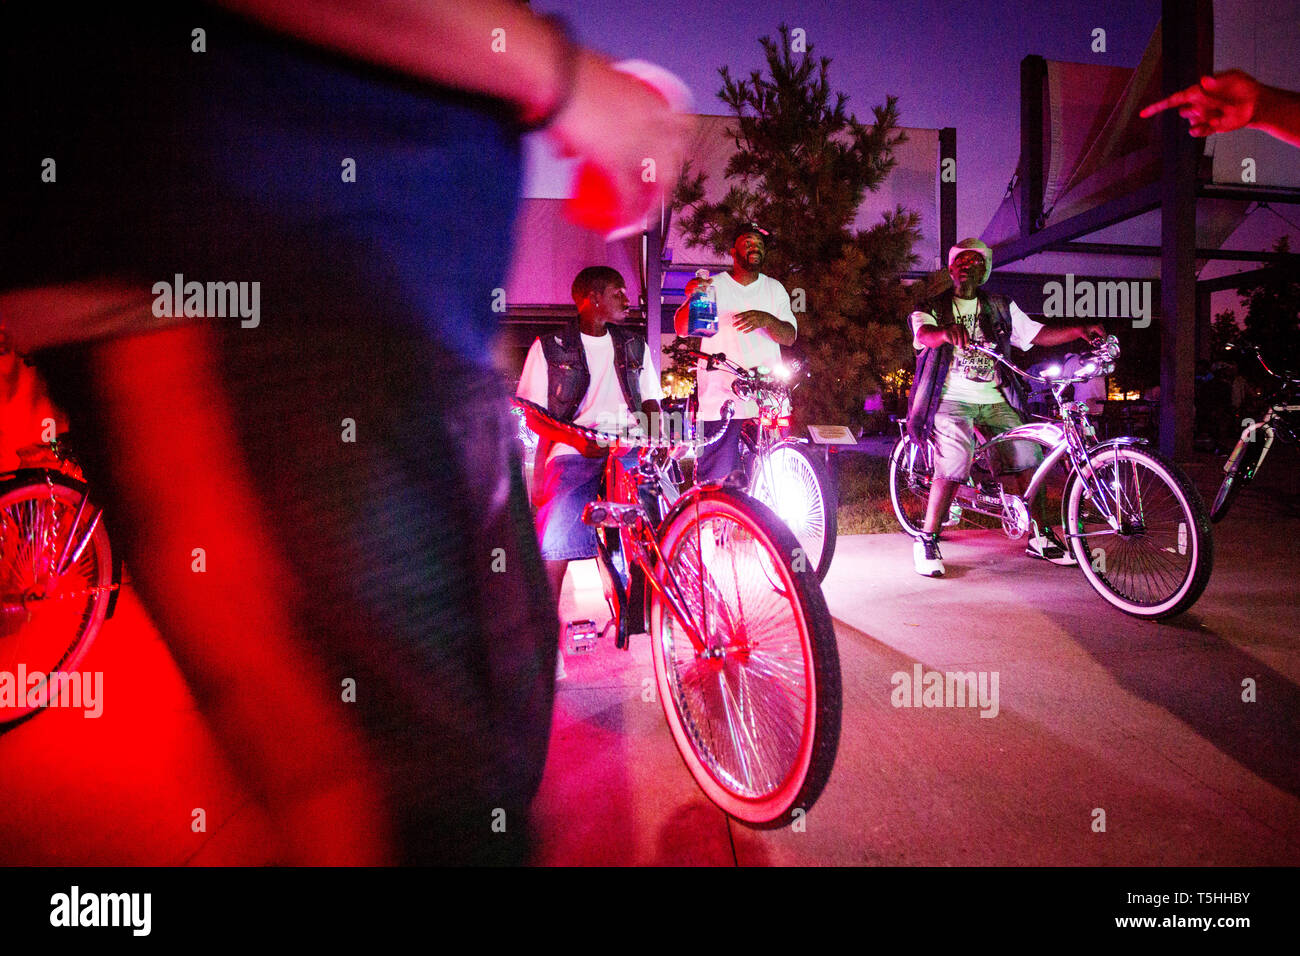 Erwachsene Männer auf Fahrrädern - Gmob - Ihre individuelle Fahrt ausgetrickst, Fahrräder, die zu einem outing am Tricentennial Park im Zentrum von Detroit. Stockfoto